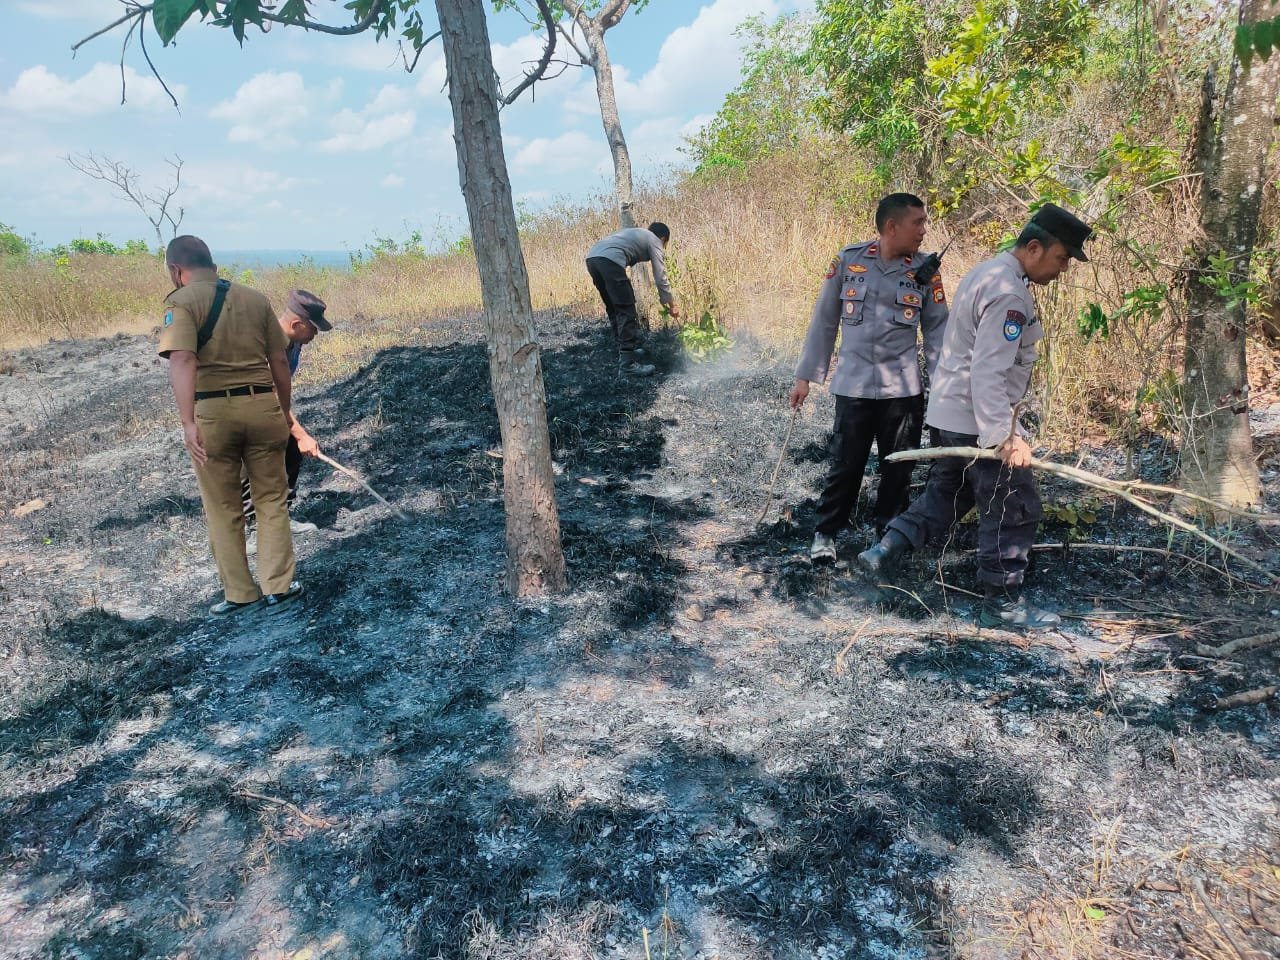 Kebakaran Lahan Perbukitan di Kuripan Diduga Akibat Puntung Rokok